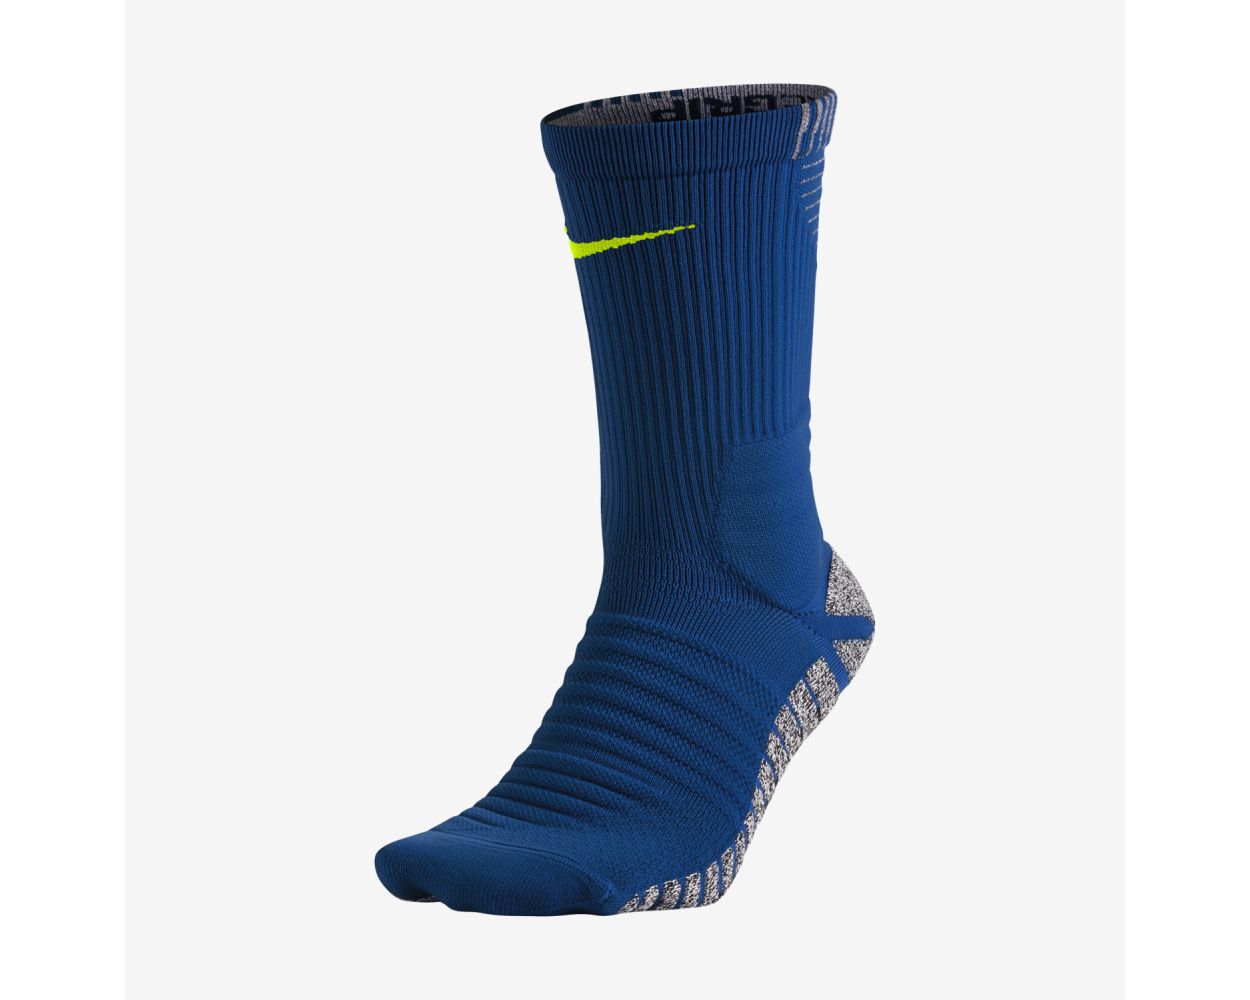 Nike Grip Strike Cushioned Crew Sock